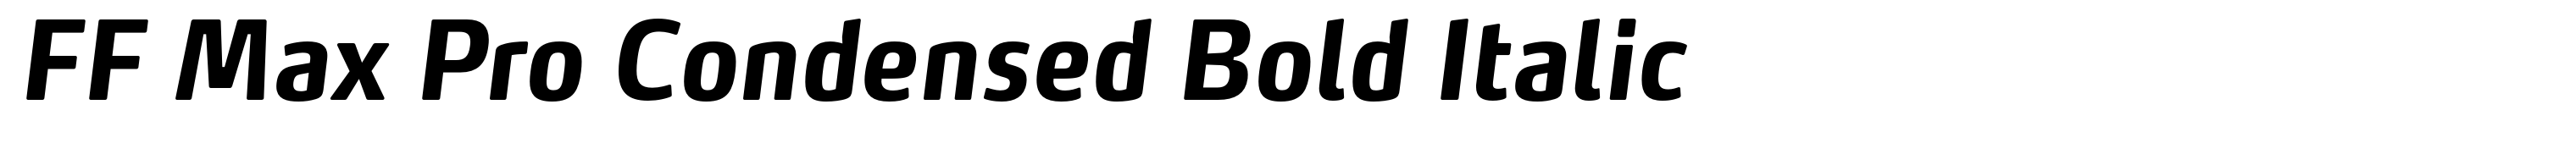 FF Max Pro Condensed Bold Italic